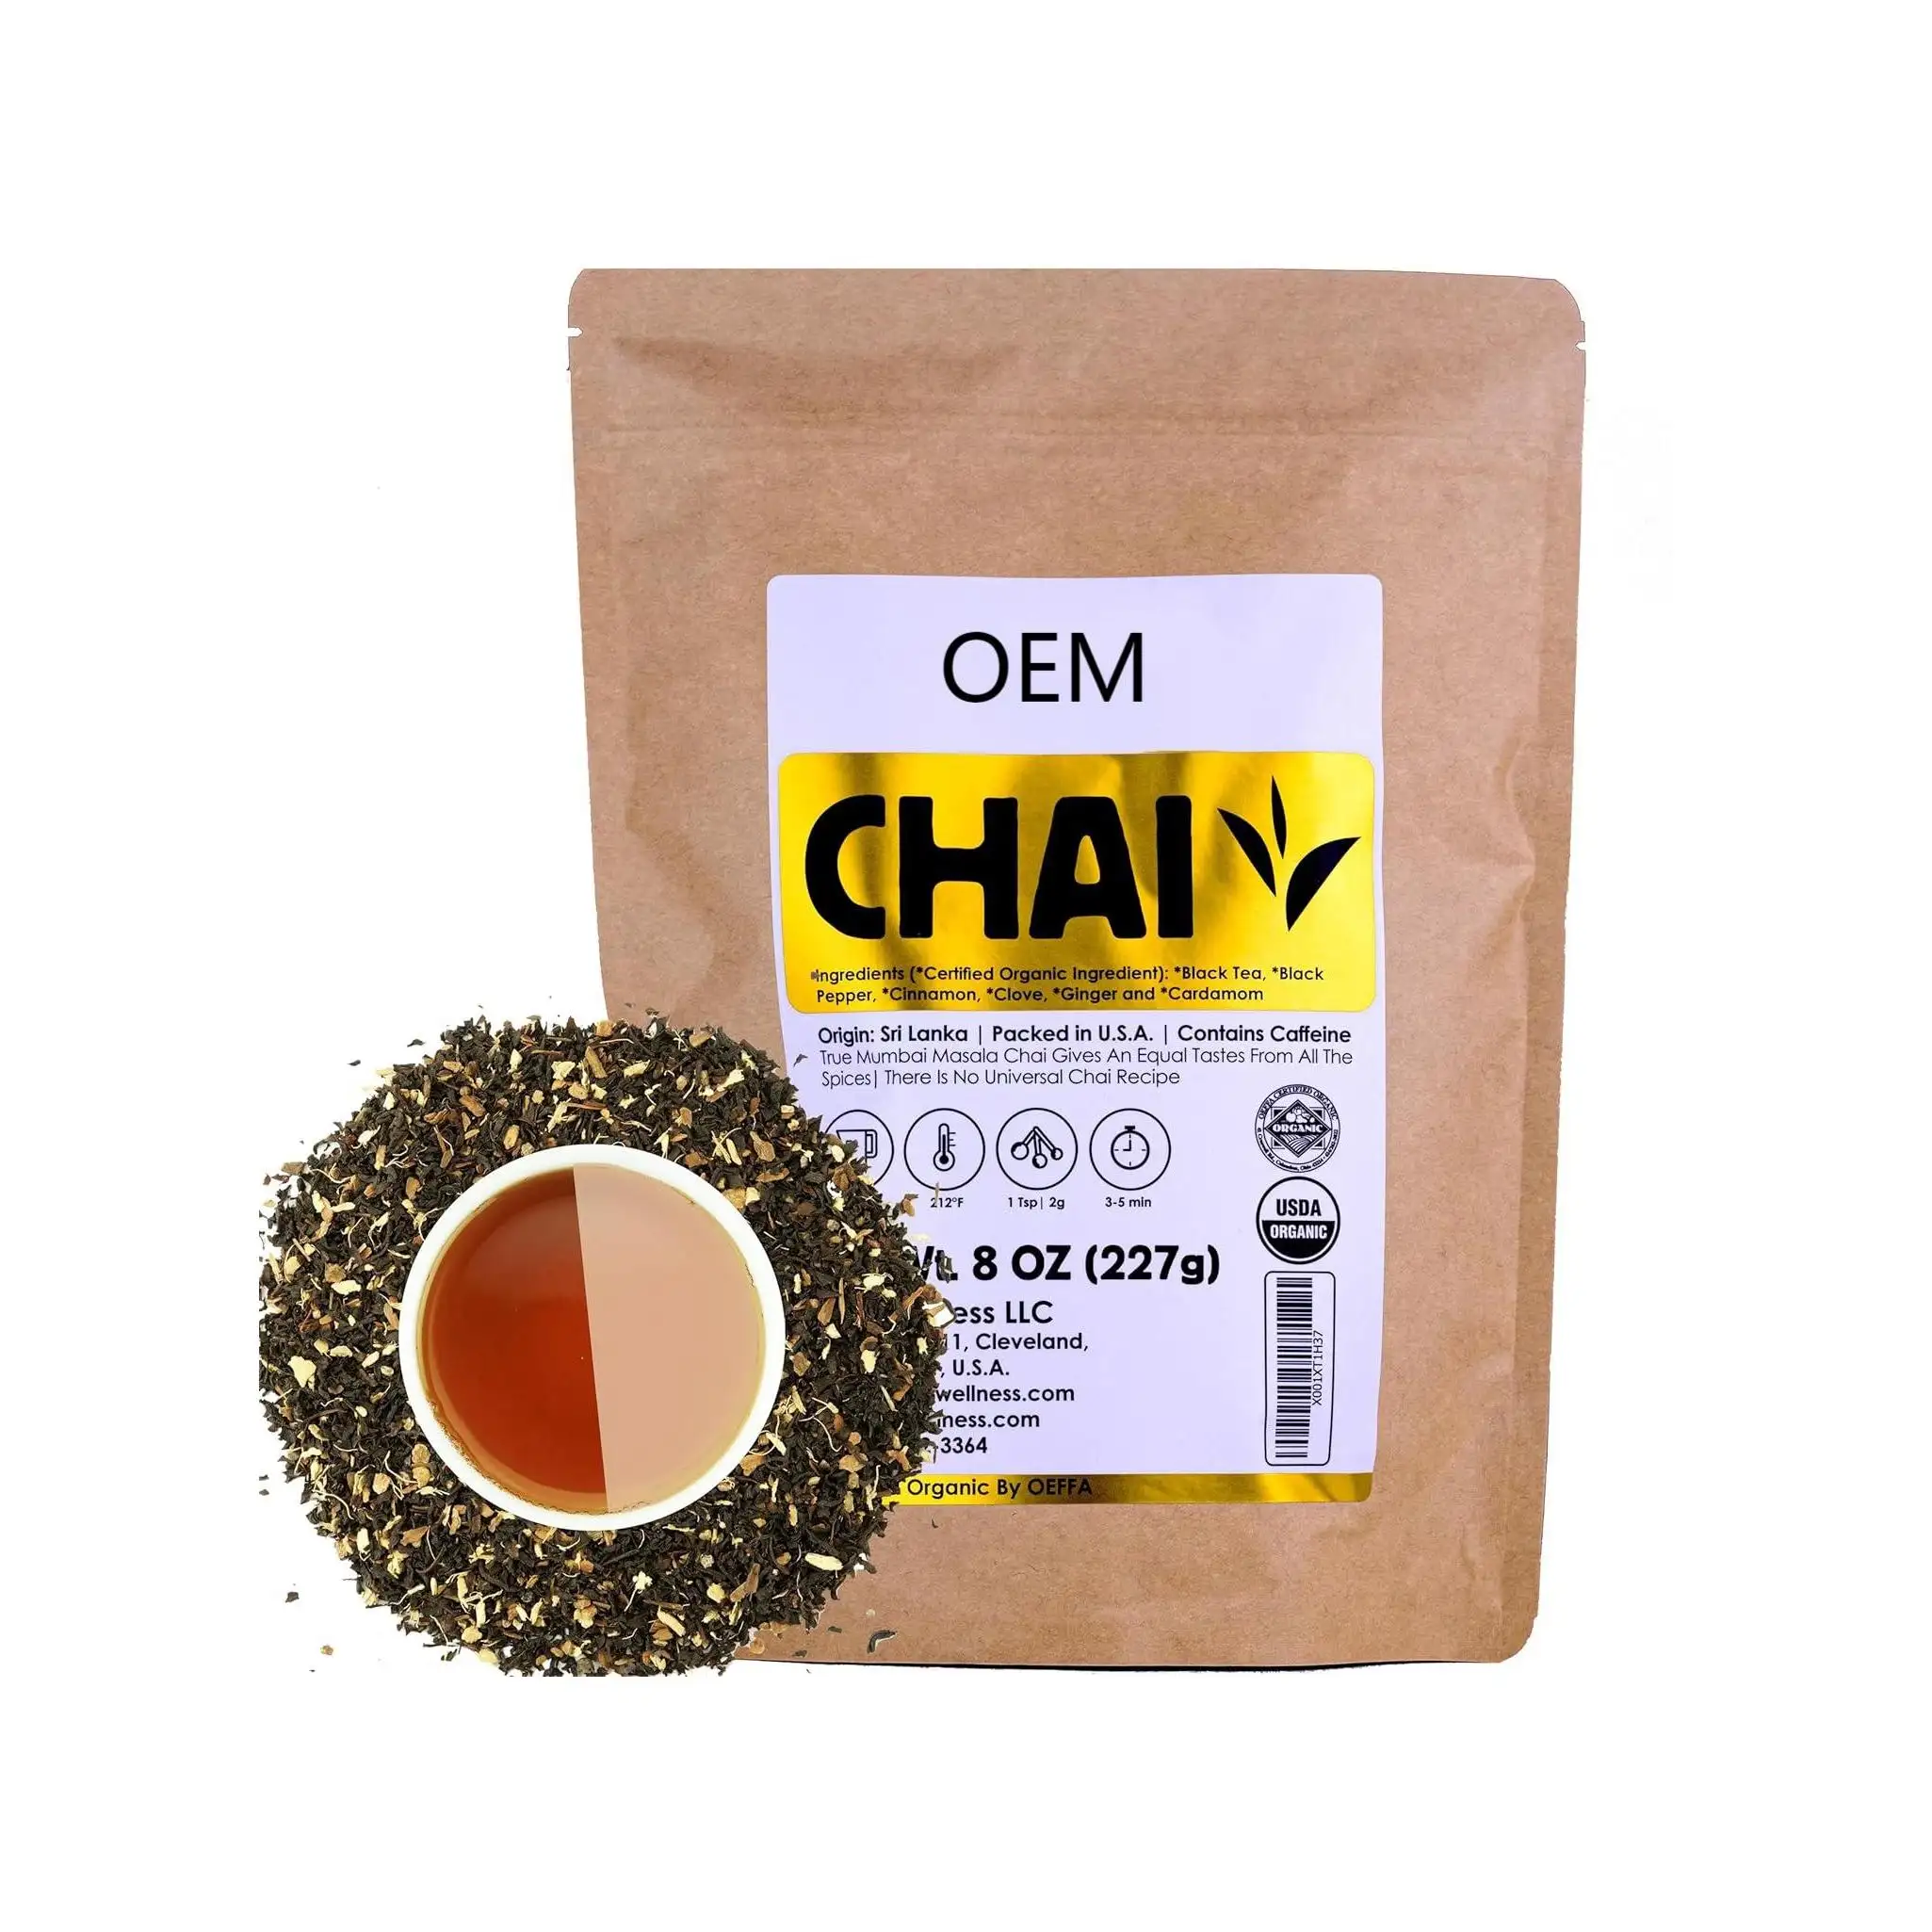 Thé de Ceylan biologique certifié OEM 100%, contenant du thé noir, de la cannelle, de la cardamome, des clous de girofle et du poivre noir